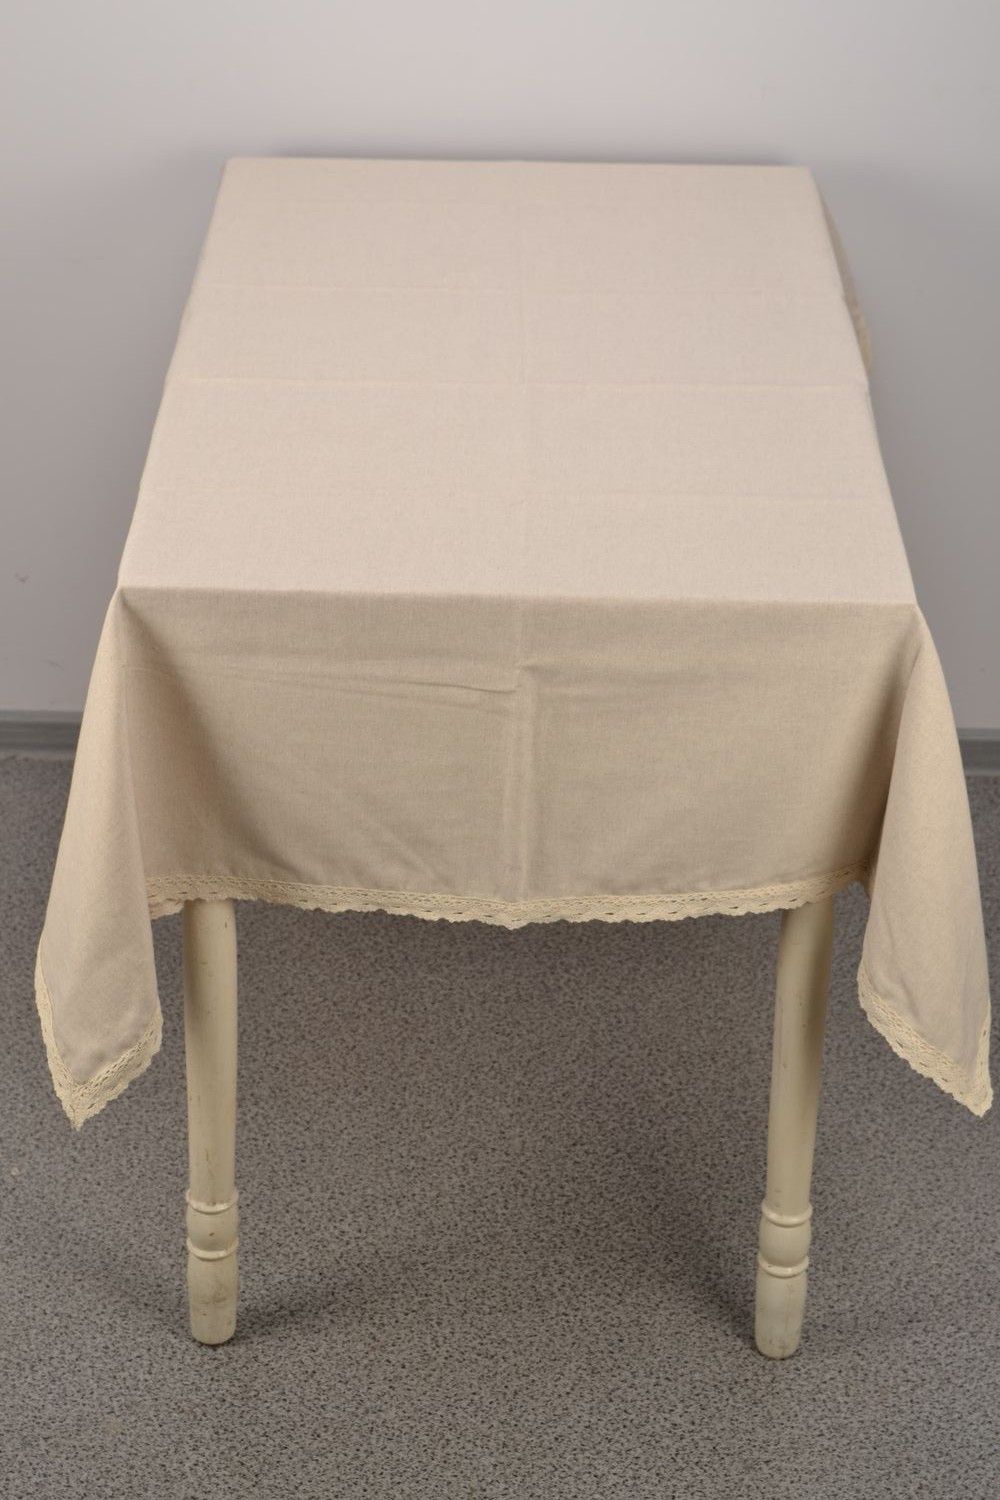 Однотонная скатерть на прямоугольный стол из ткани с кружевом фото 2